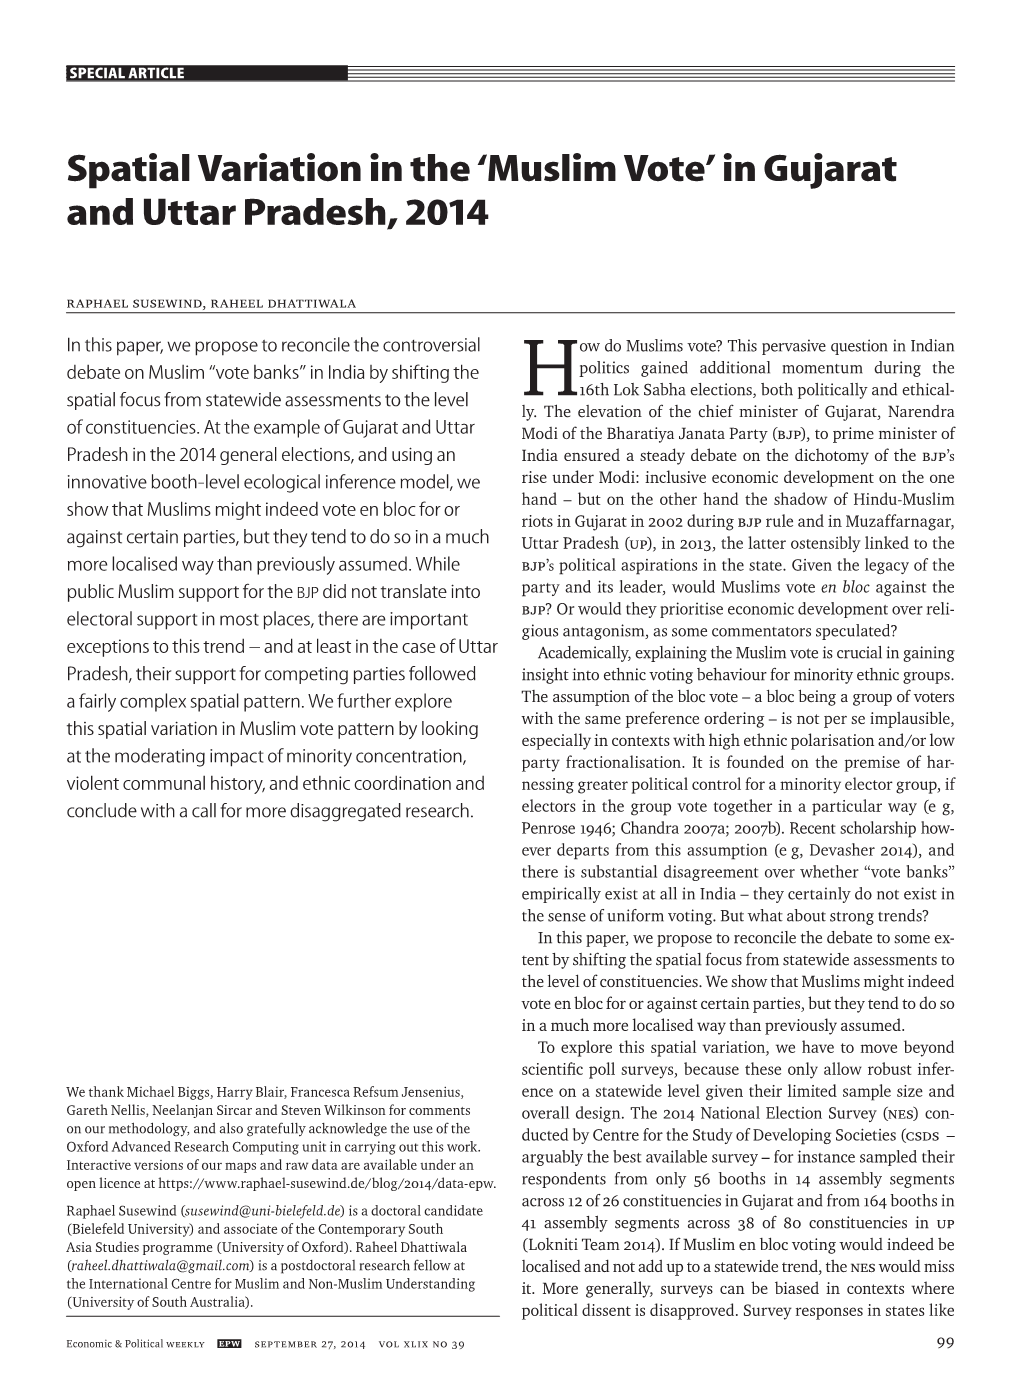 Spatial Variation in the 'Muslim Vote' in Gujarat and Uttar Pradesh, 2014